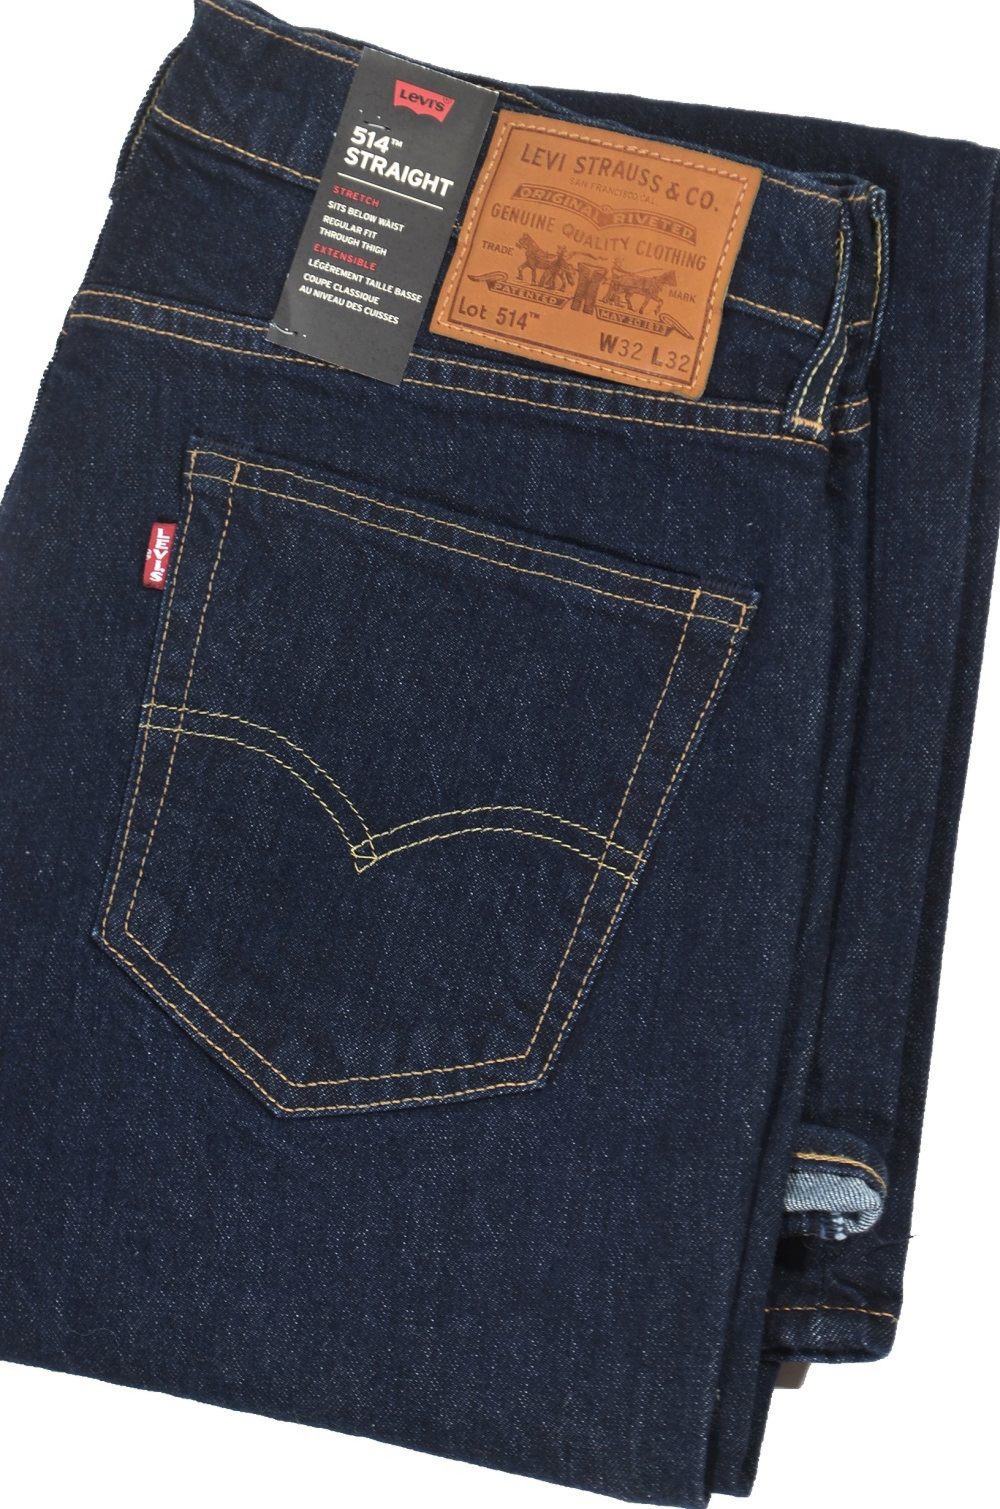 Оригинальные джинсы Levis лучшего качества по лучшим ценам. Оформить доставку в любой город России. ... Самые известные мужские джинсы Levis. В нашем интернет-магазине представлен большой ассортимент моделей, например: Levis 501, Levis